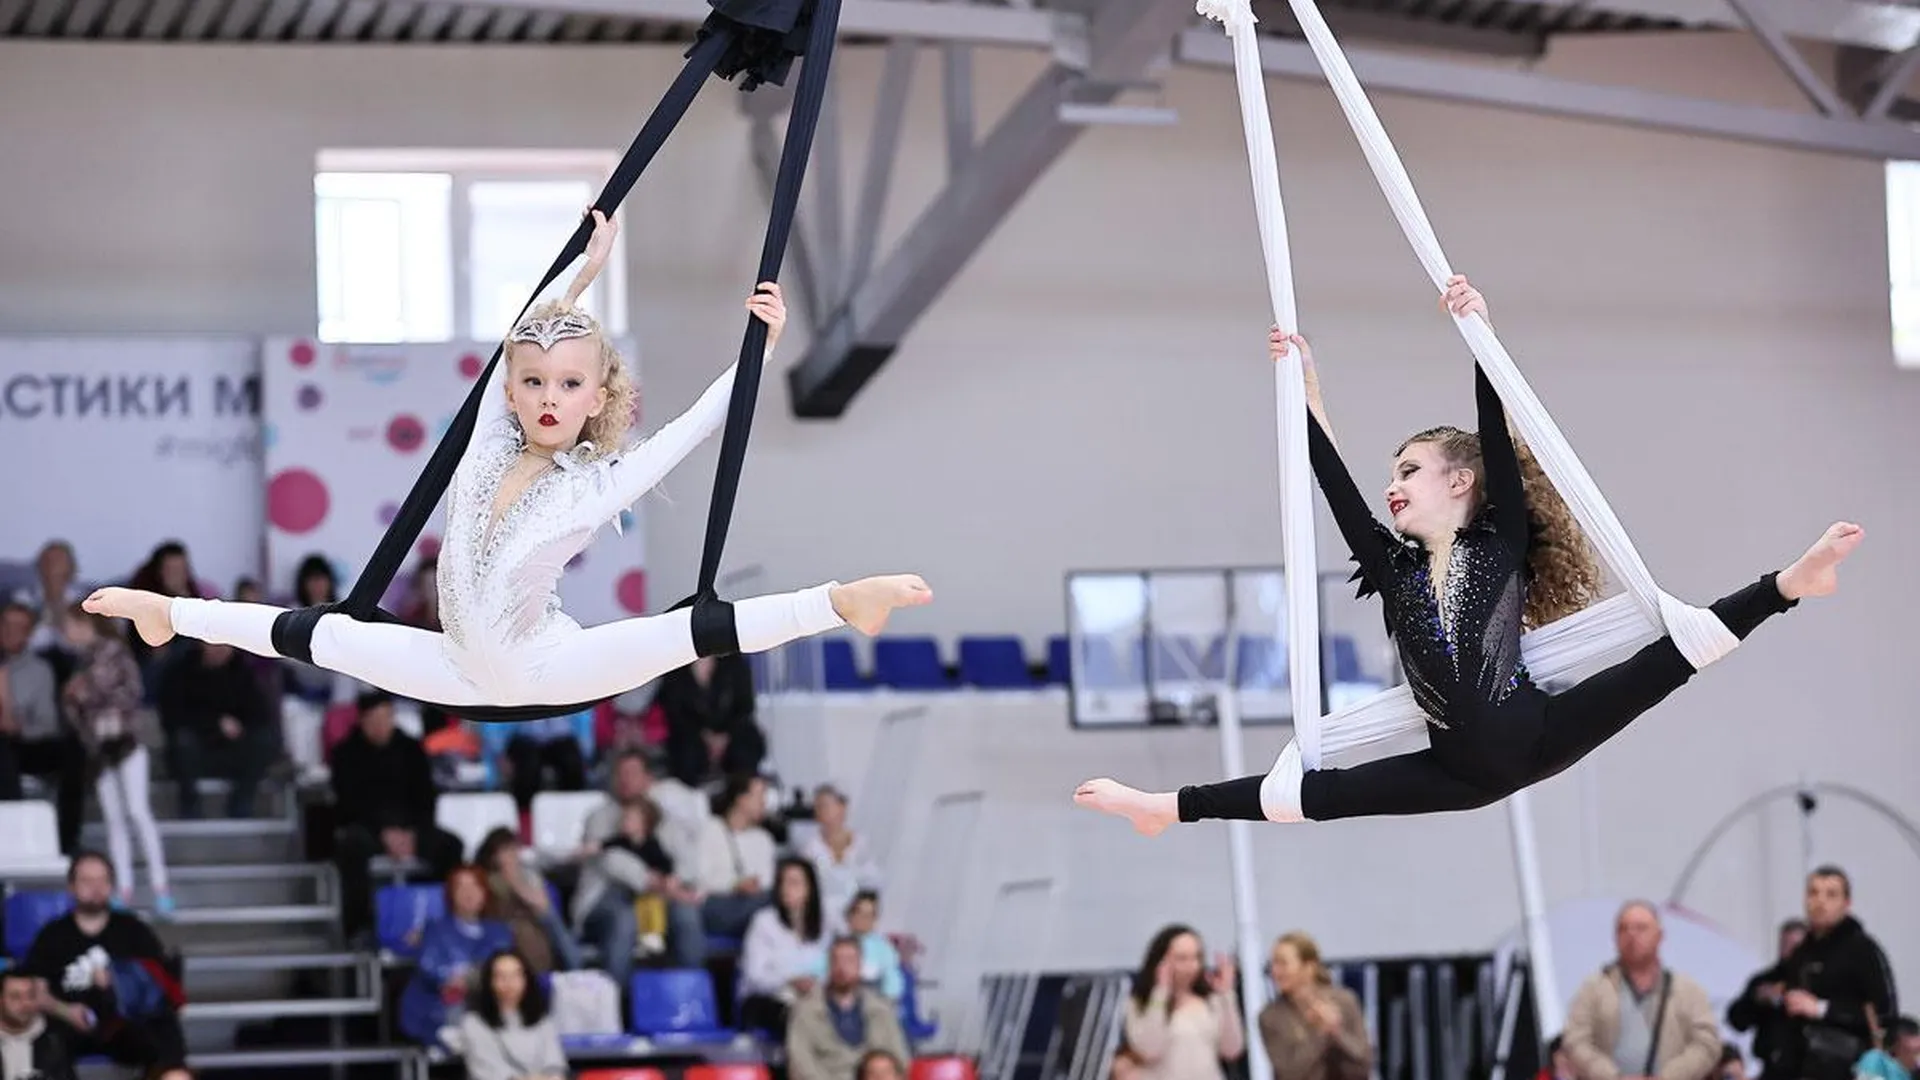 Всероссийский фестиваль циркового искусства пройдет в Хотьково 20 и 21 апреля